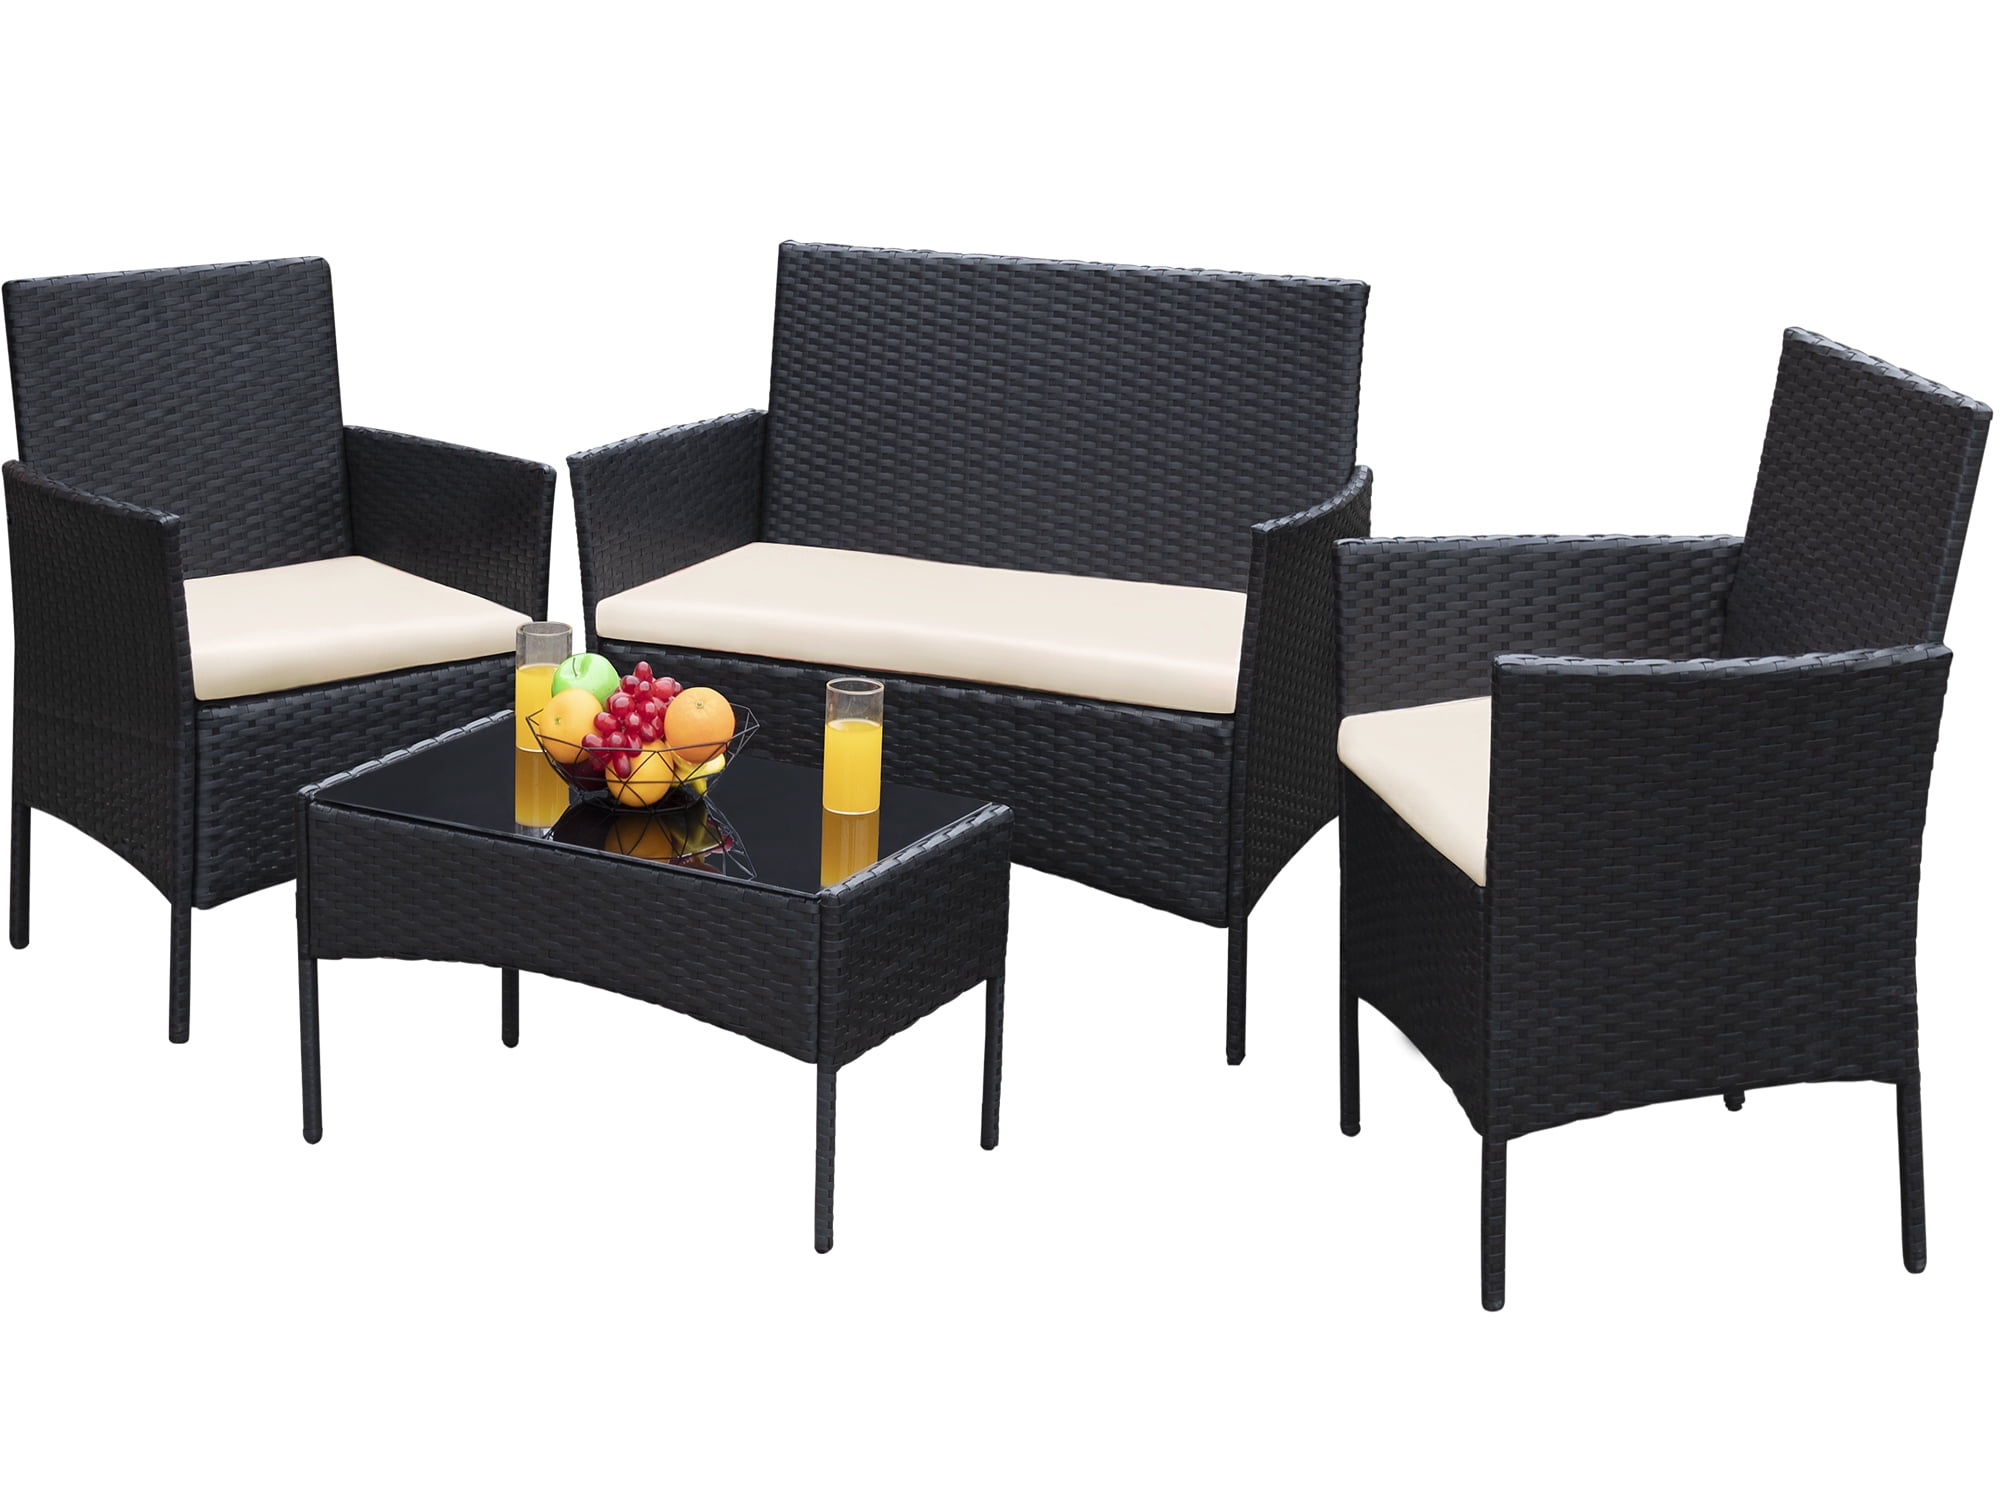 Devoko 4 Pieces Outdoor Patio Conversation Set PE Rattan Wicker Furniture Set, Black/Beige